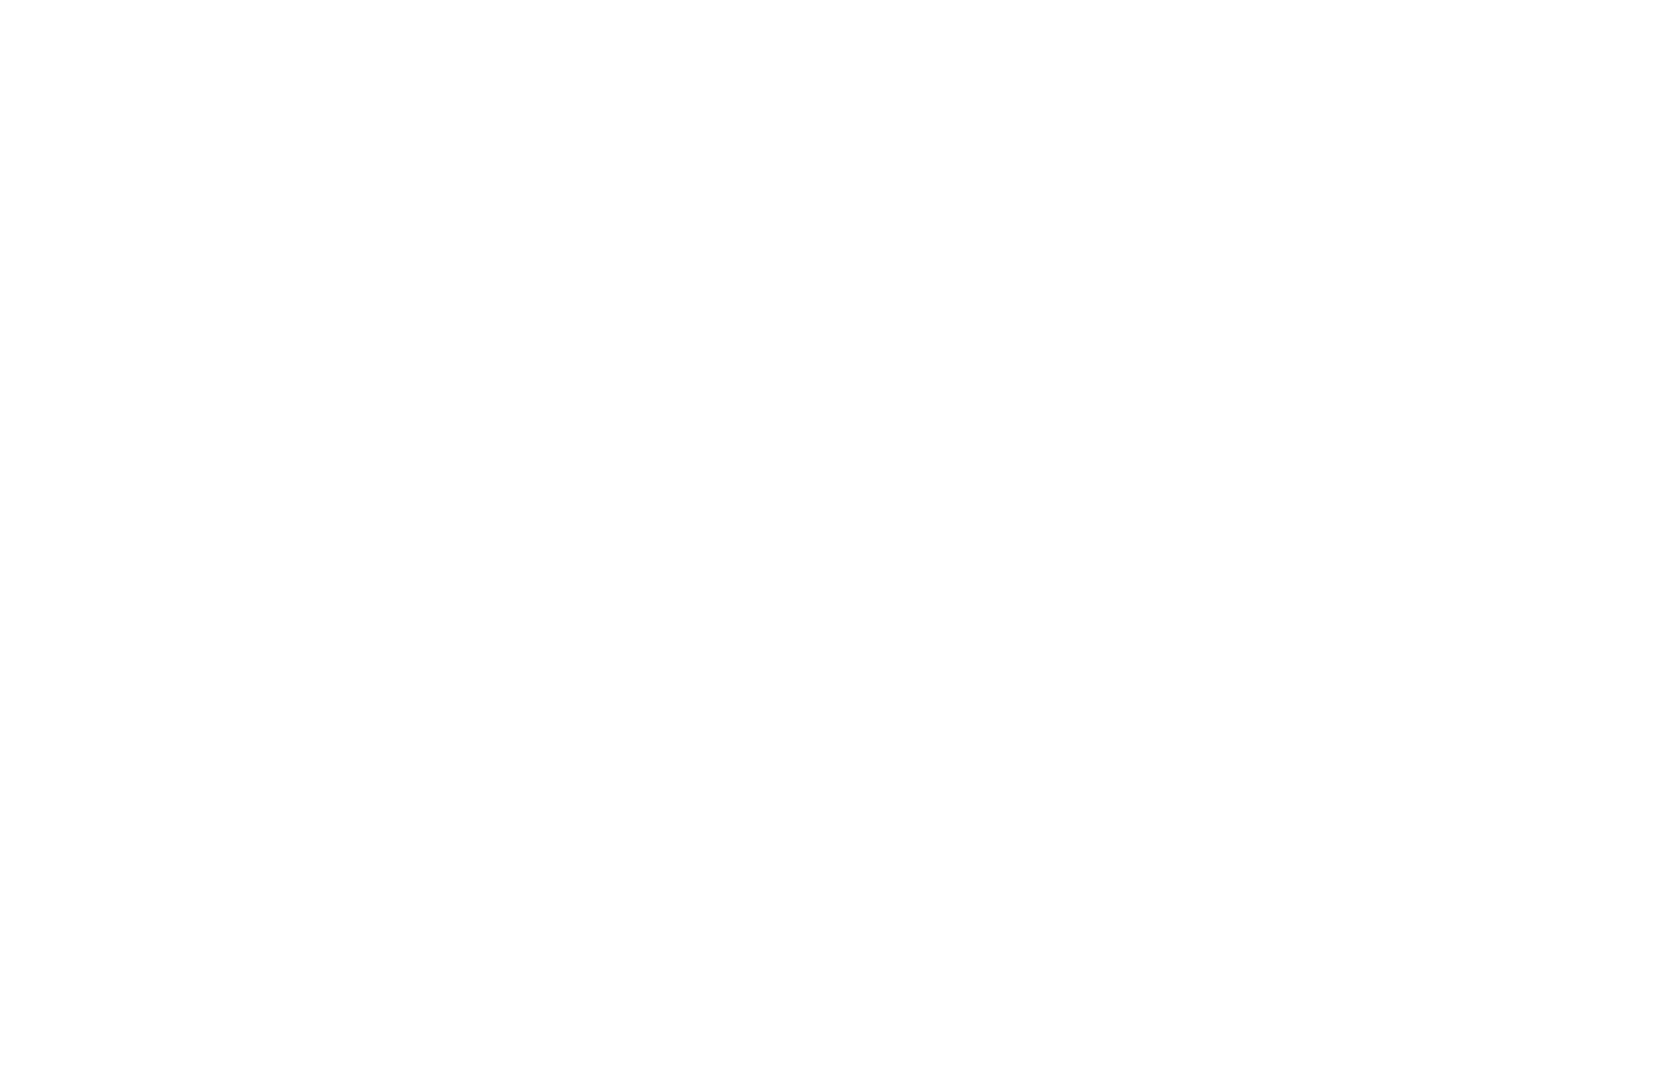 Татьяна Борисовна Забозлаева с отцом, Борисом Степановичем Забозлаевым, в читальном зале Российской национальной библиотеки [конец 1990-х]